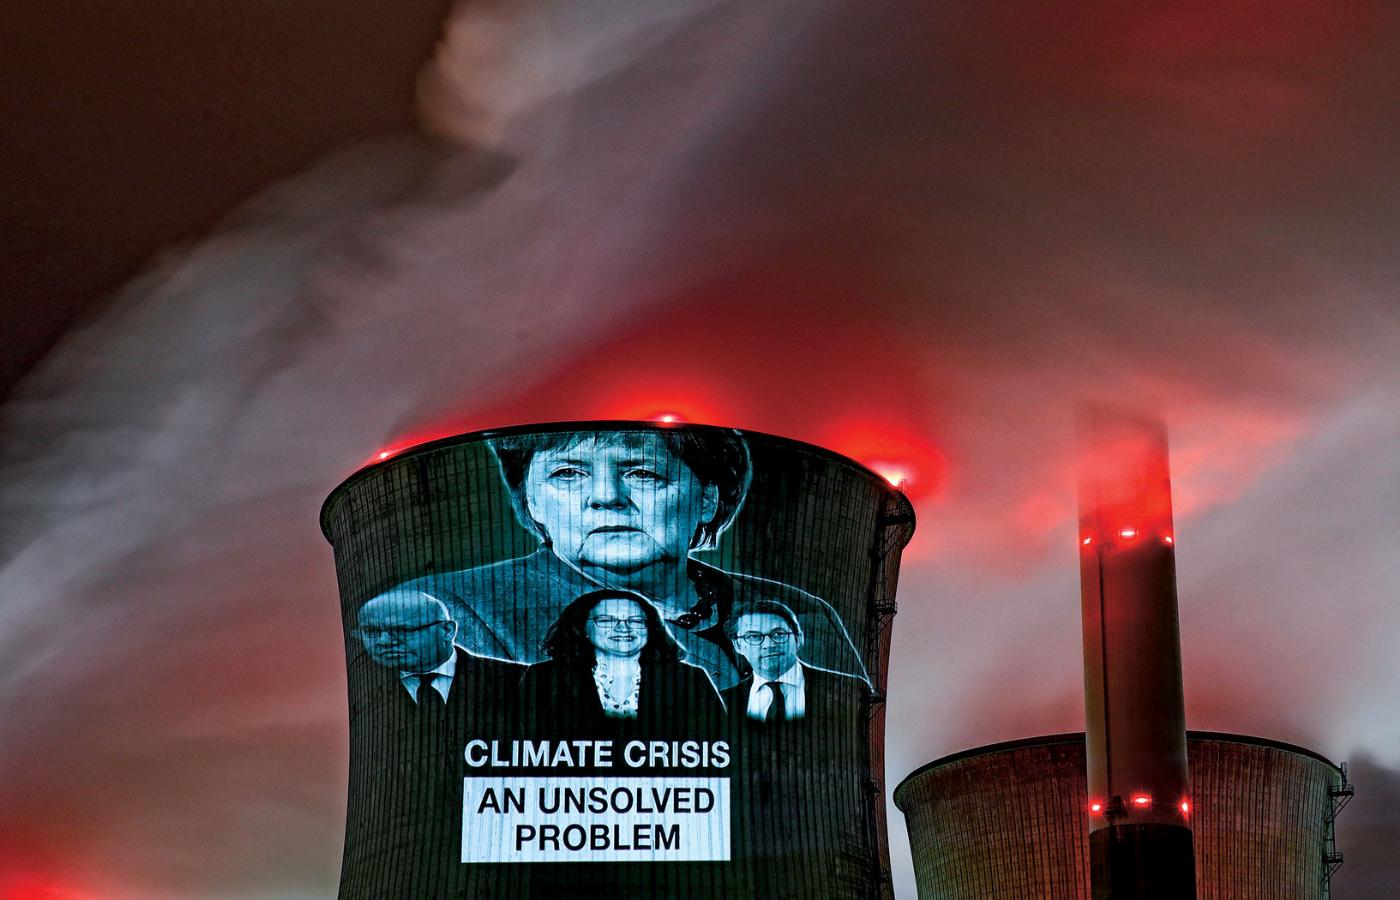 Slajdy na wieży chłodzącej elektrowni w Neurath. Akcja Greenpeace pod hasłem „Kryzys klimatyczny – nierozwiązany problem”.